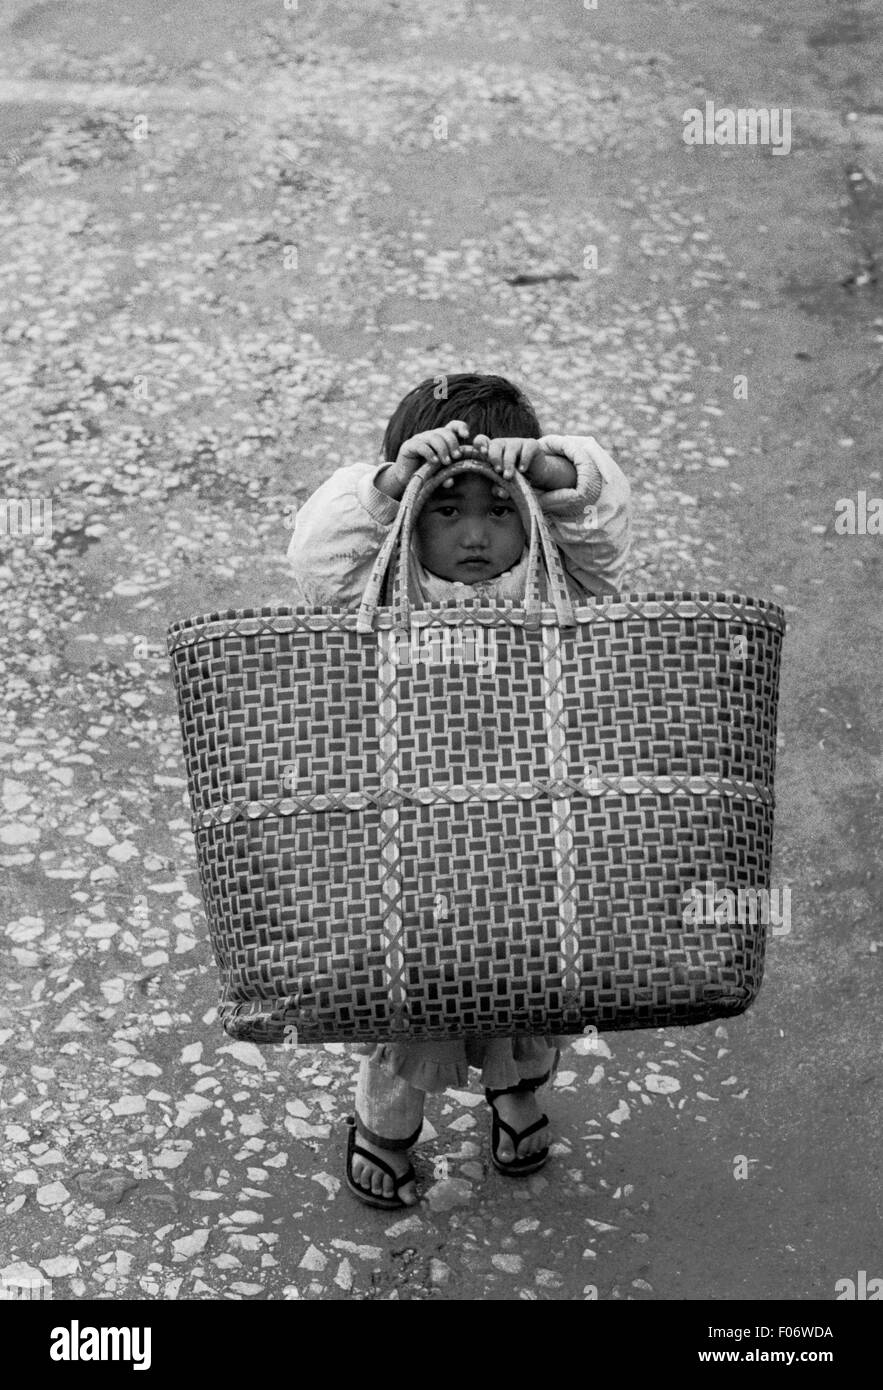 Enfant timide, à l'arrière son panier myanmar brian mcguire Banque D'Images